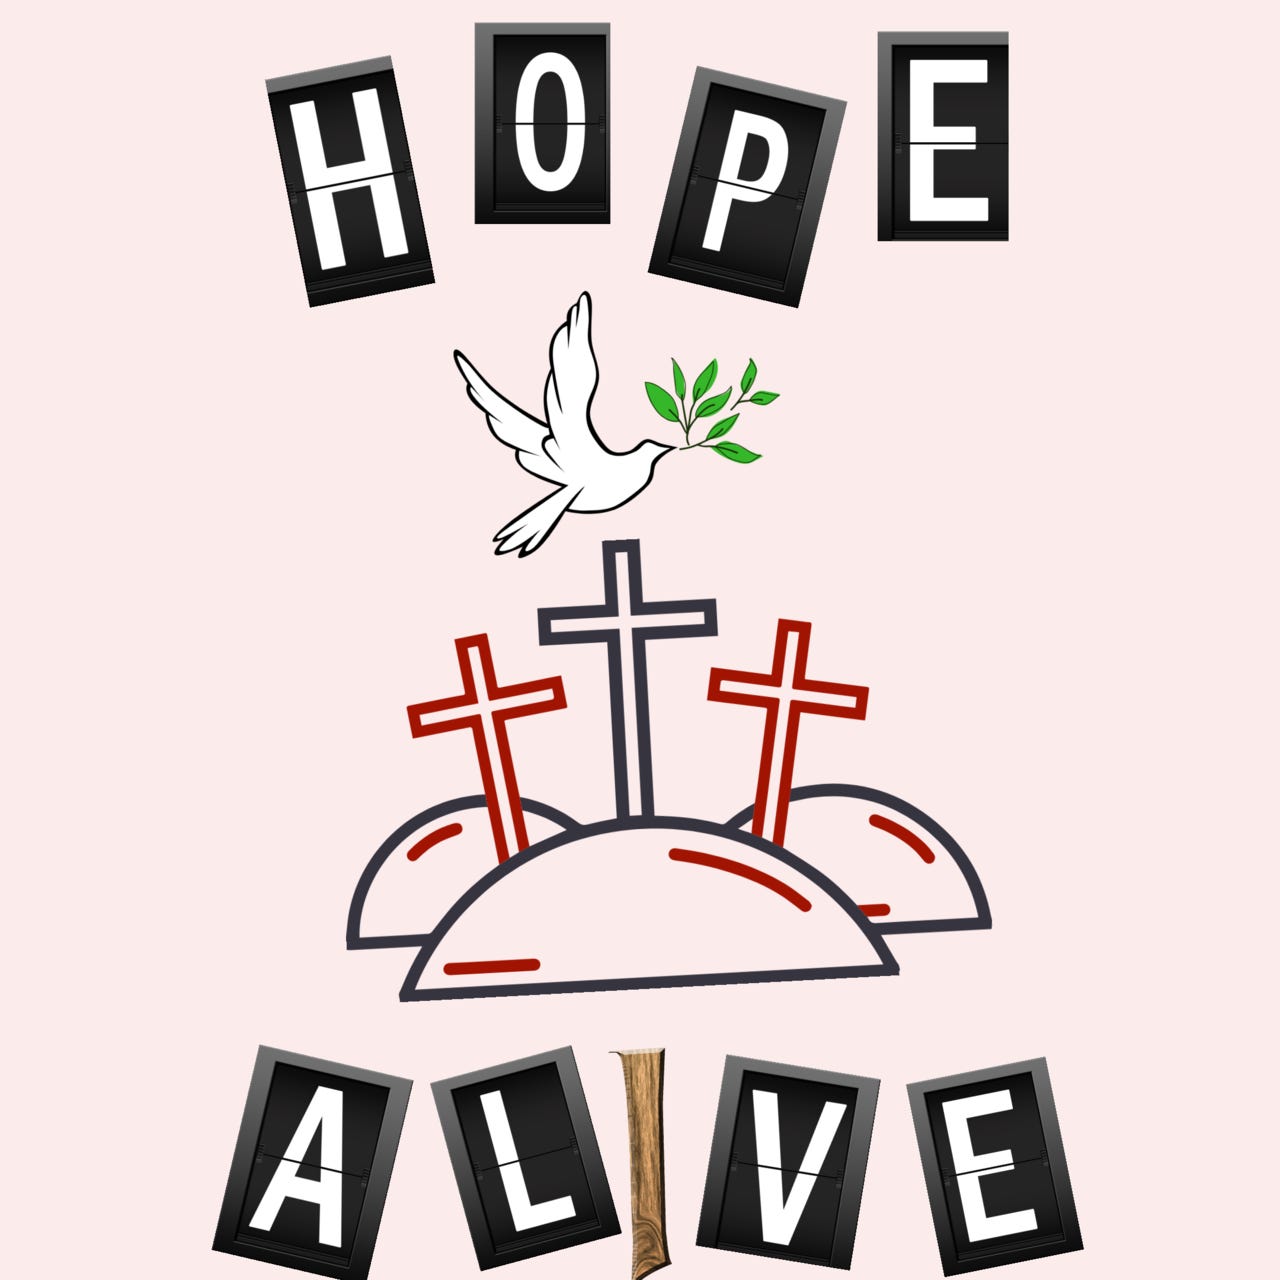 Artwork for HOPE ALIVE 